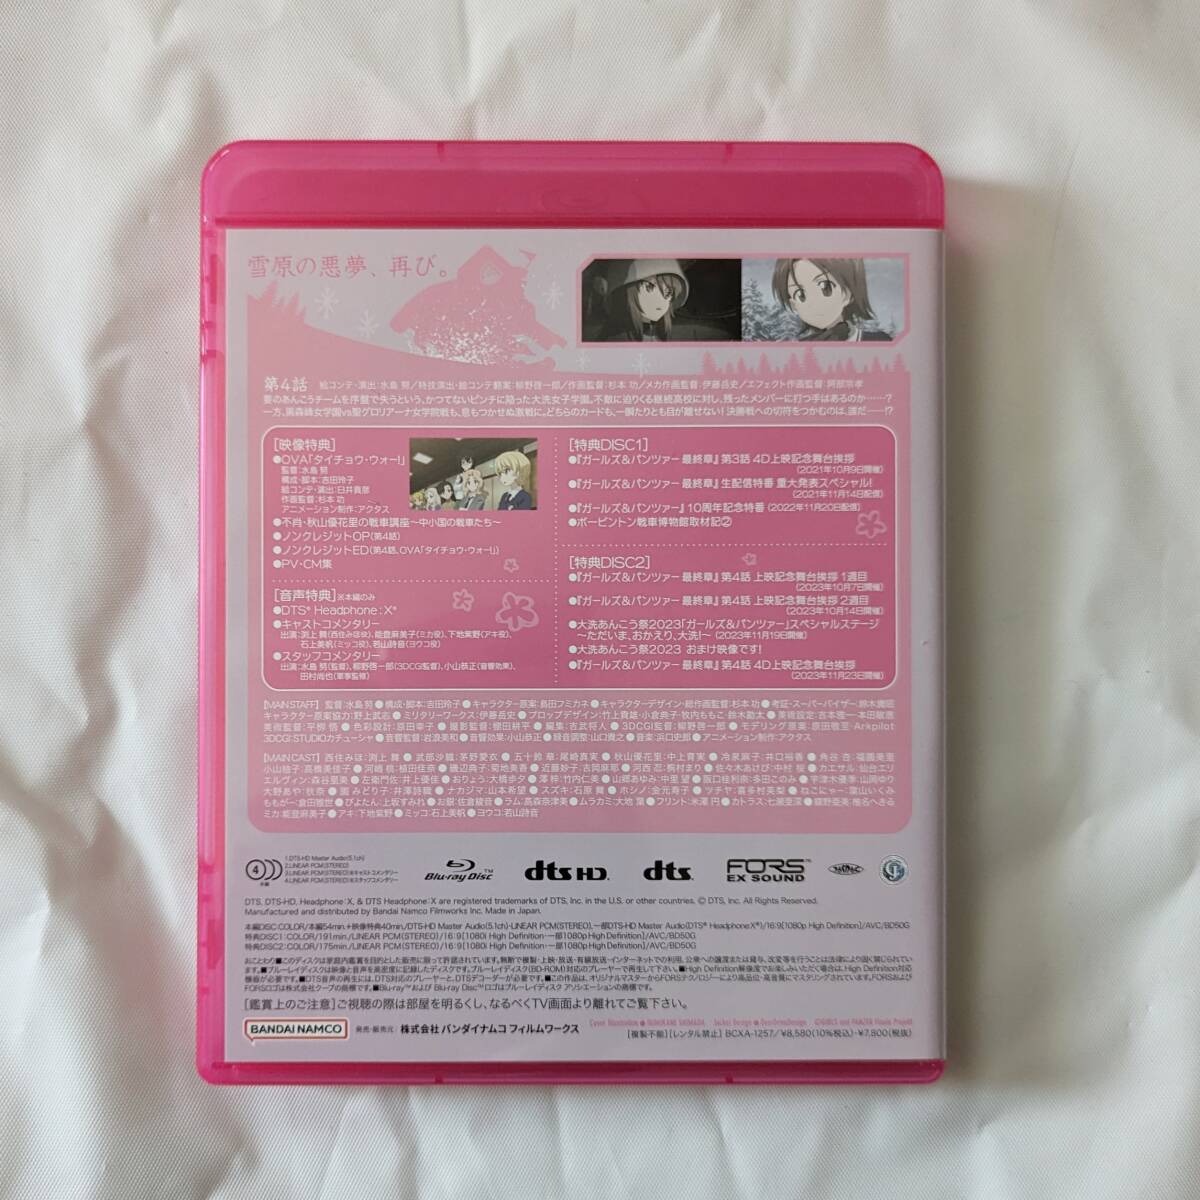  Girls&Panzer последняя глава no. 4 рассказ Blu-ray Disc ( специальное оборудование ограниченая версия ) * привилегия брошюра вид нет 